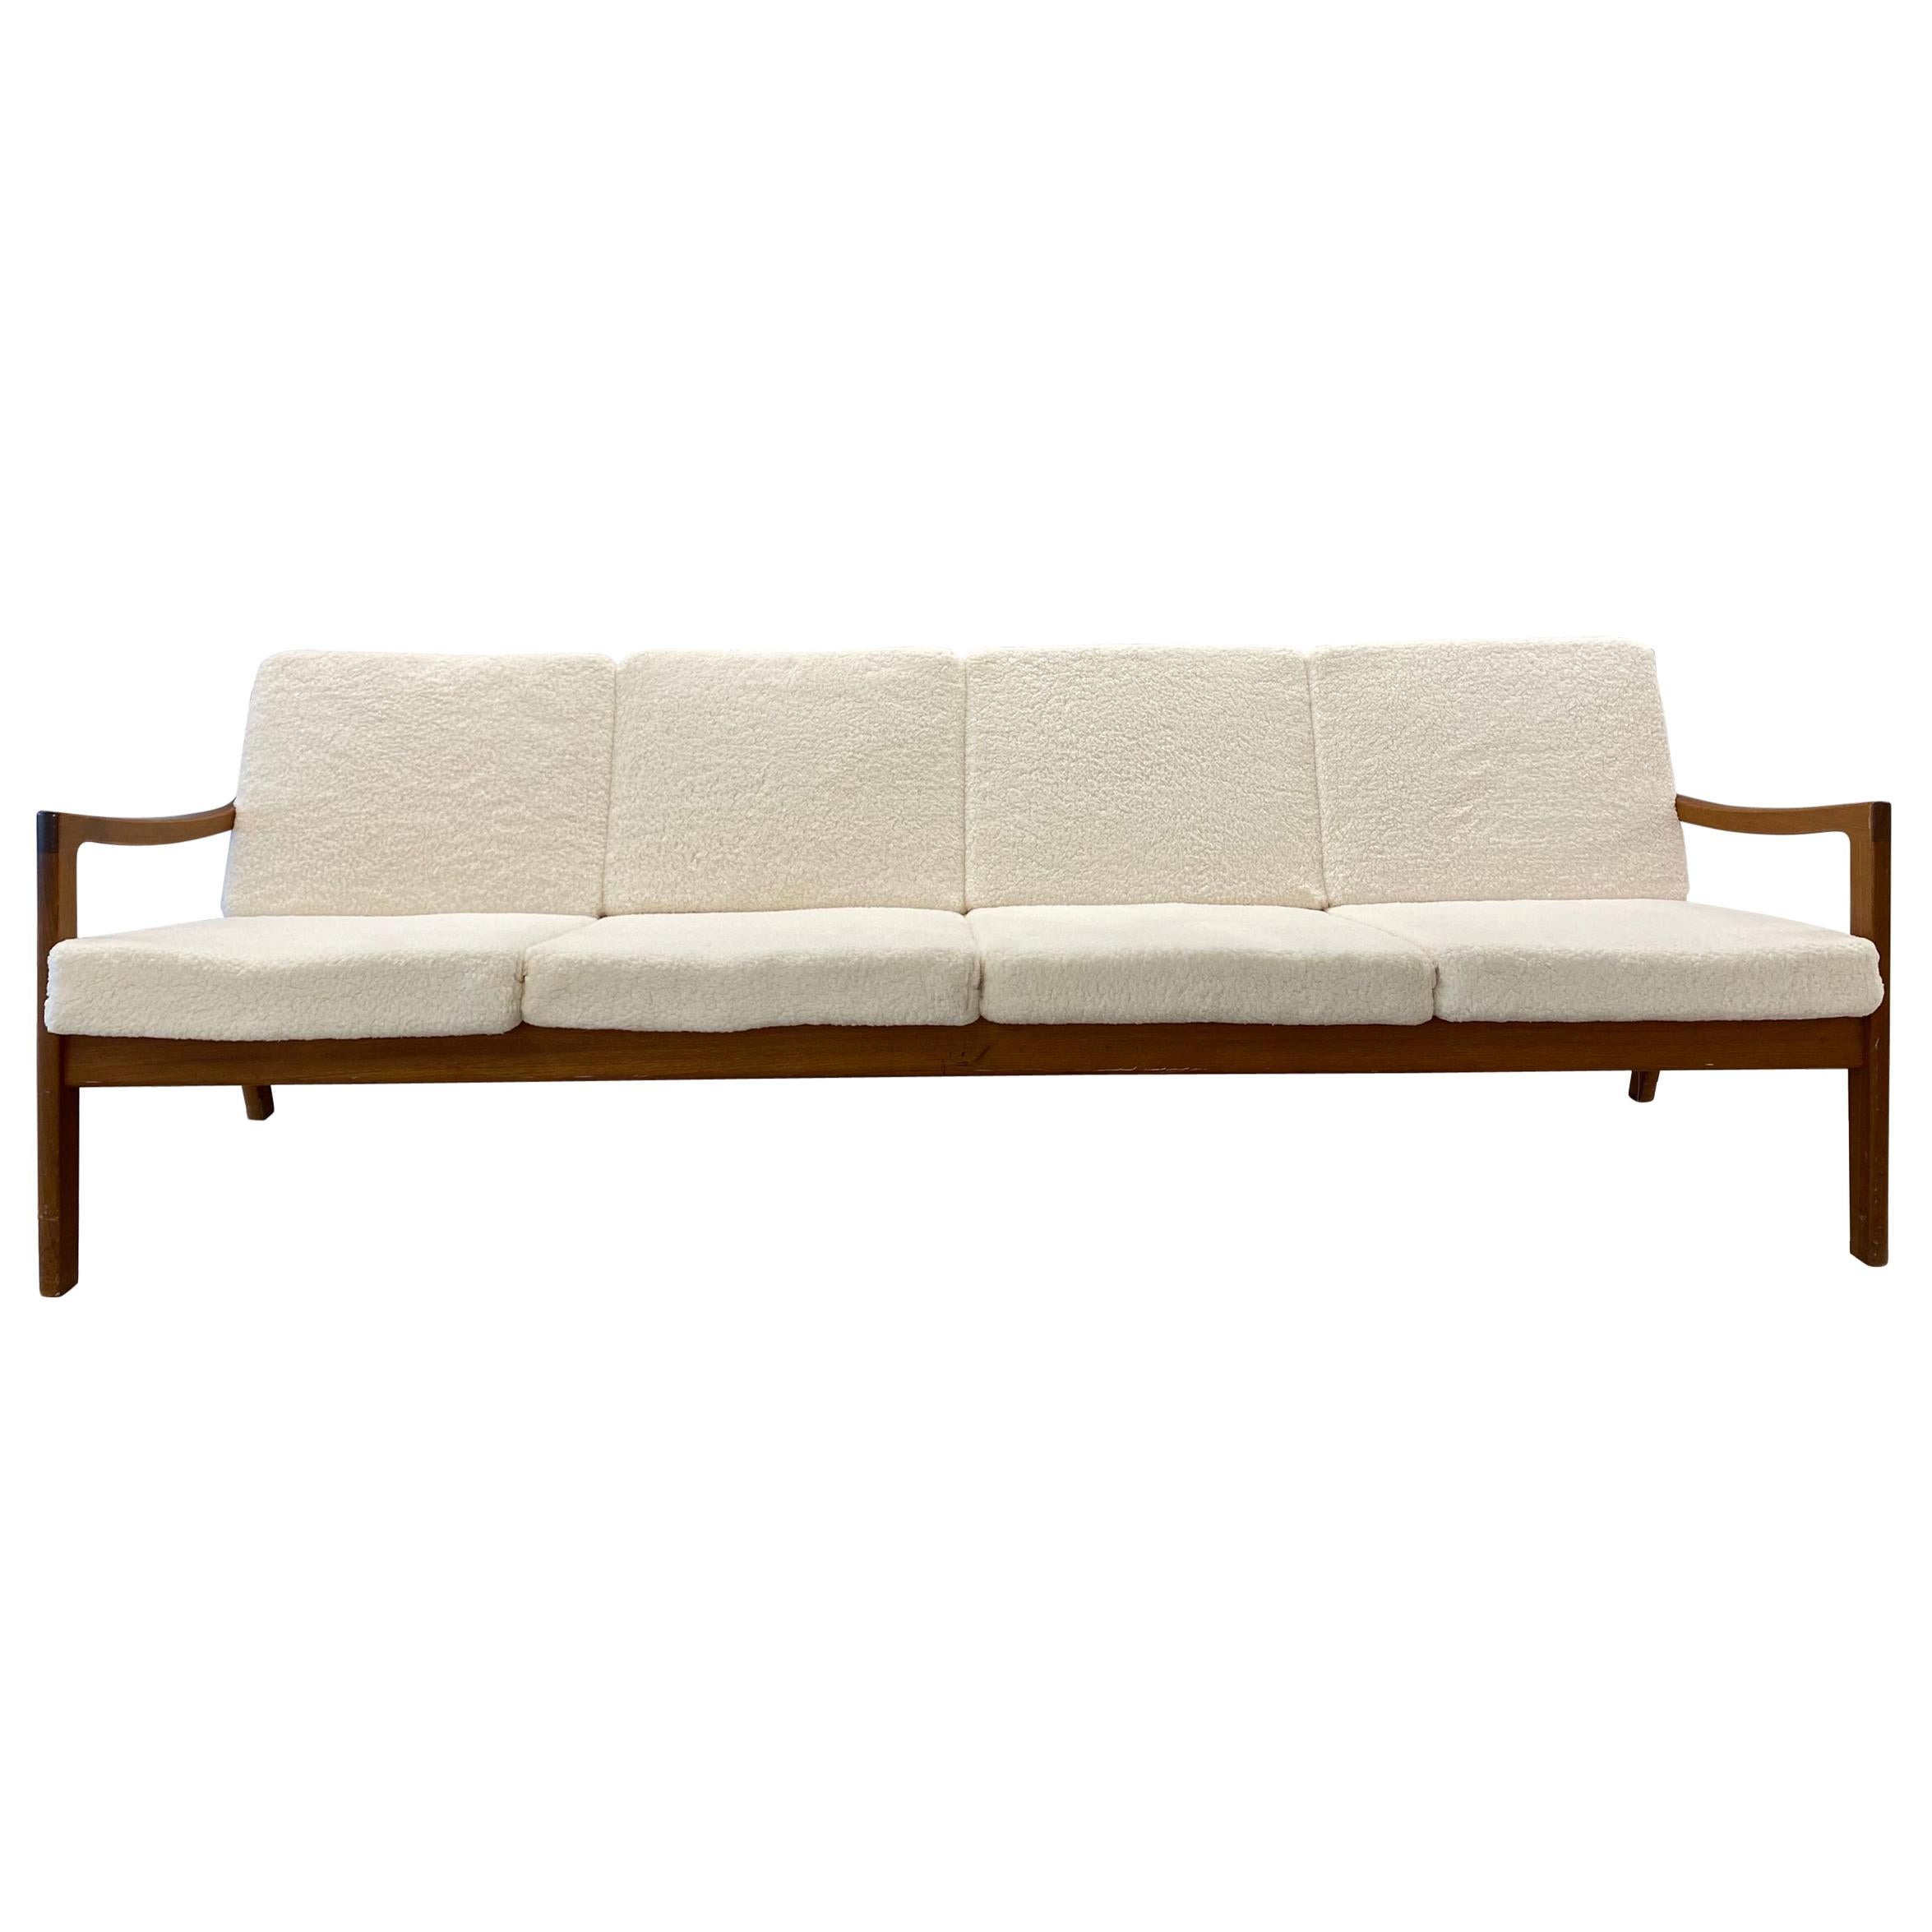 Ole Wanscher for John Stuart Danish Modern Sherpa Couch Sofa, Mid Century Modern